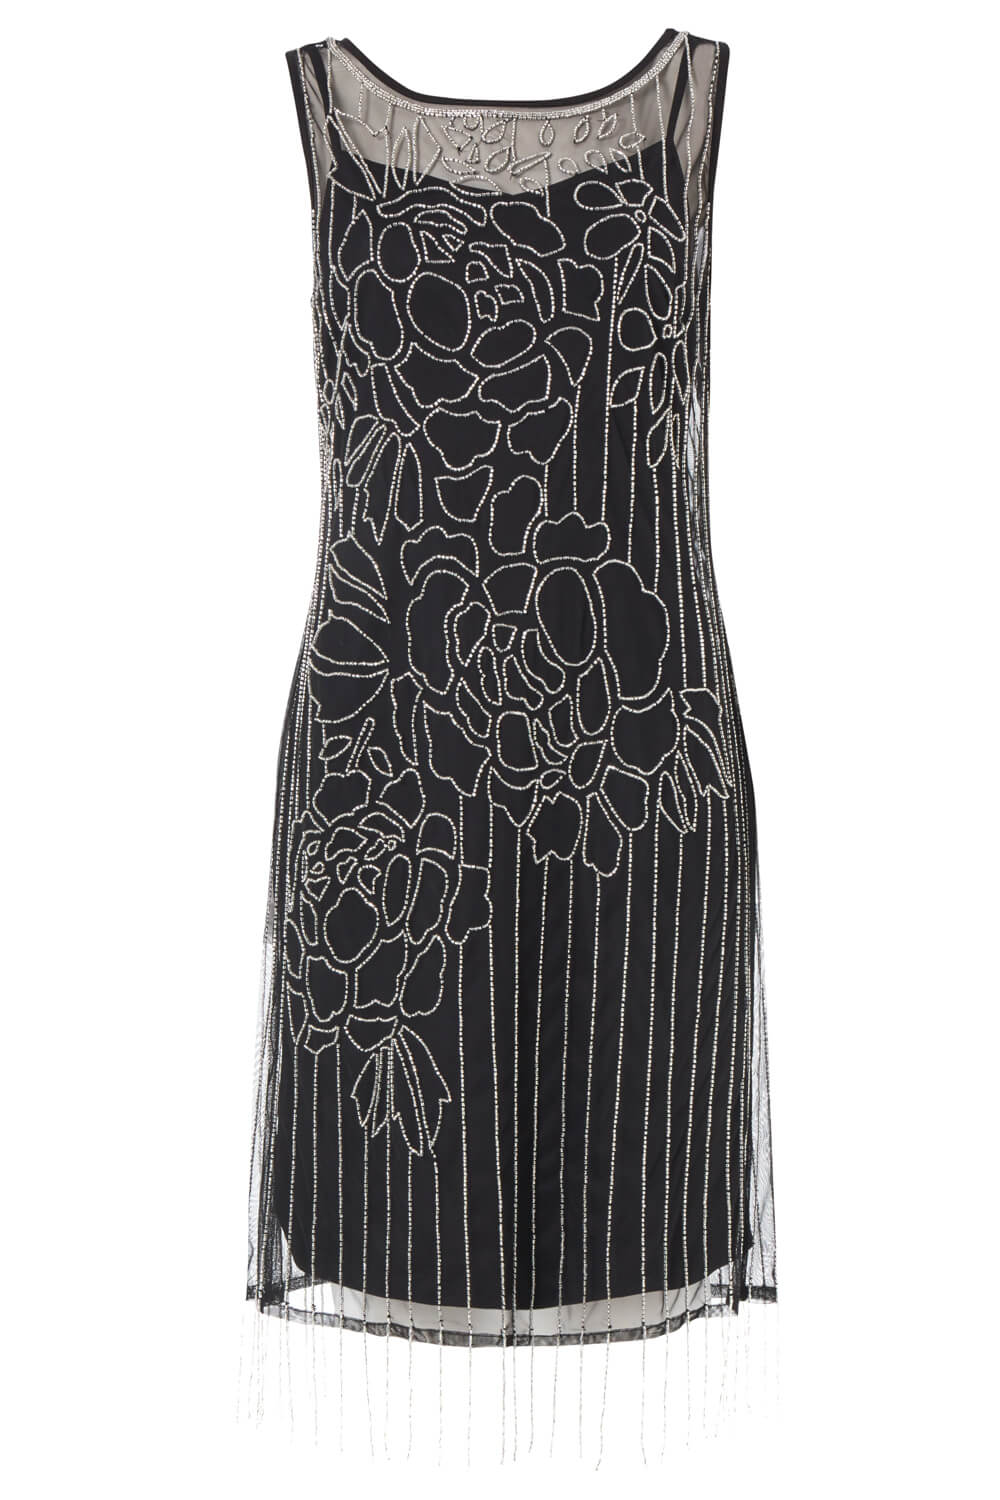 Black Floral Embellished Flapper Dress, Image 5 of 5